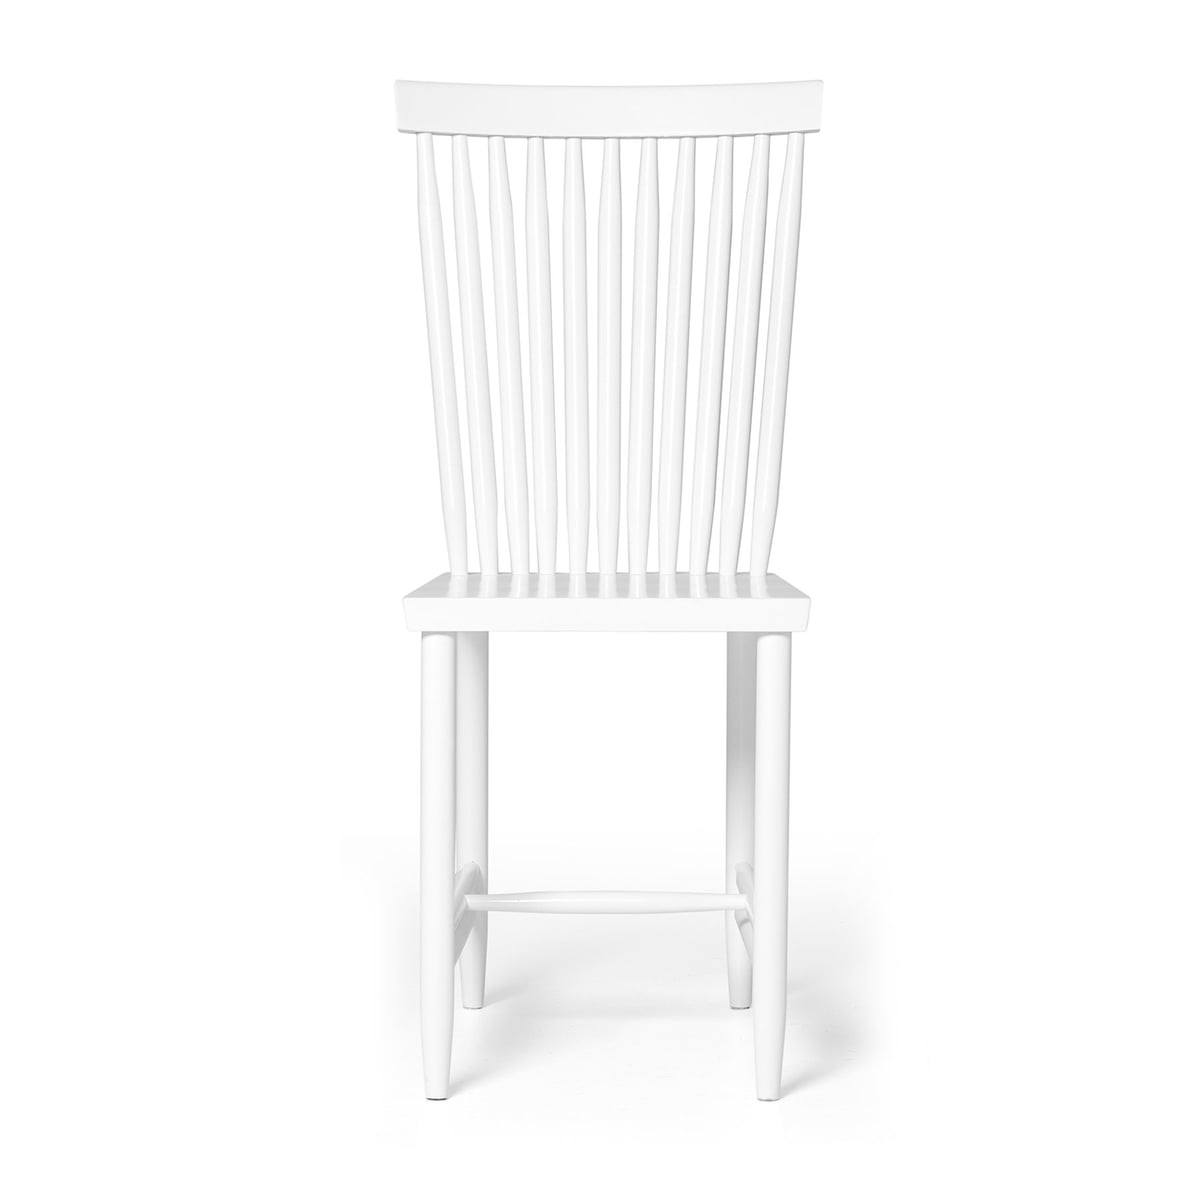 Family Chair von Design House Stockholm kaufen